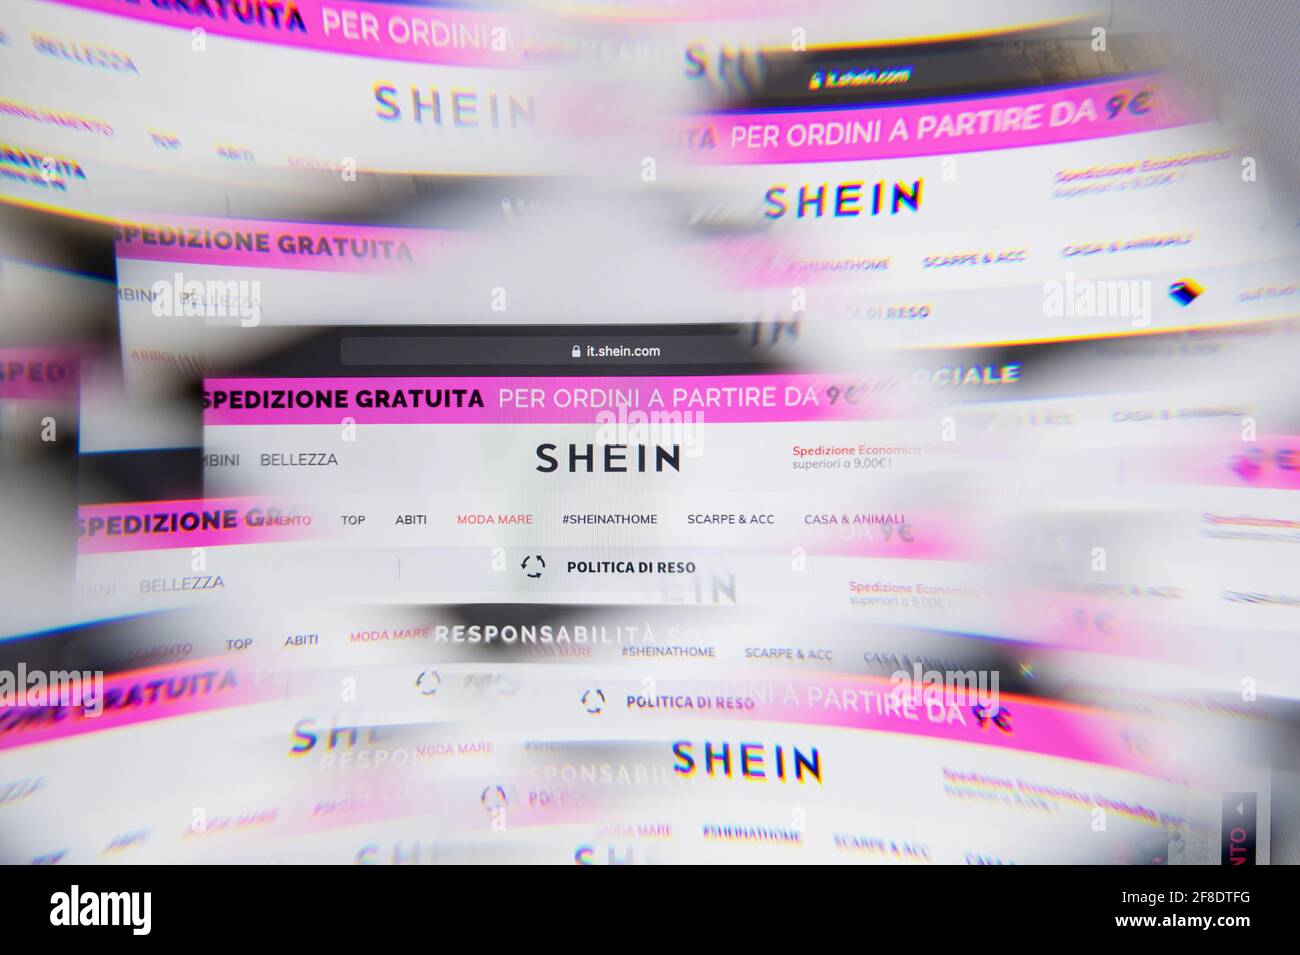 Milano, Italia - 10 APRILE 2021: Logo Shein sullo schermo del laptop visto  attraverso un prisma ottico. Immagine editoriale illustrativa dal sito di  Shein Foto stock - Alamy